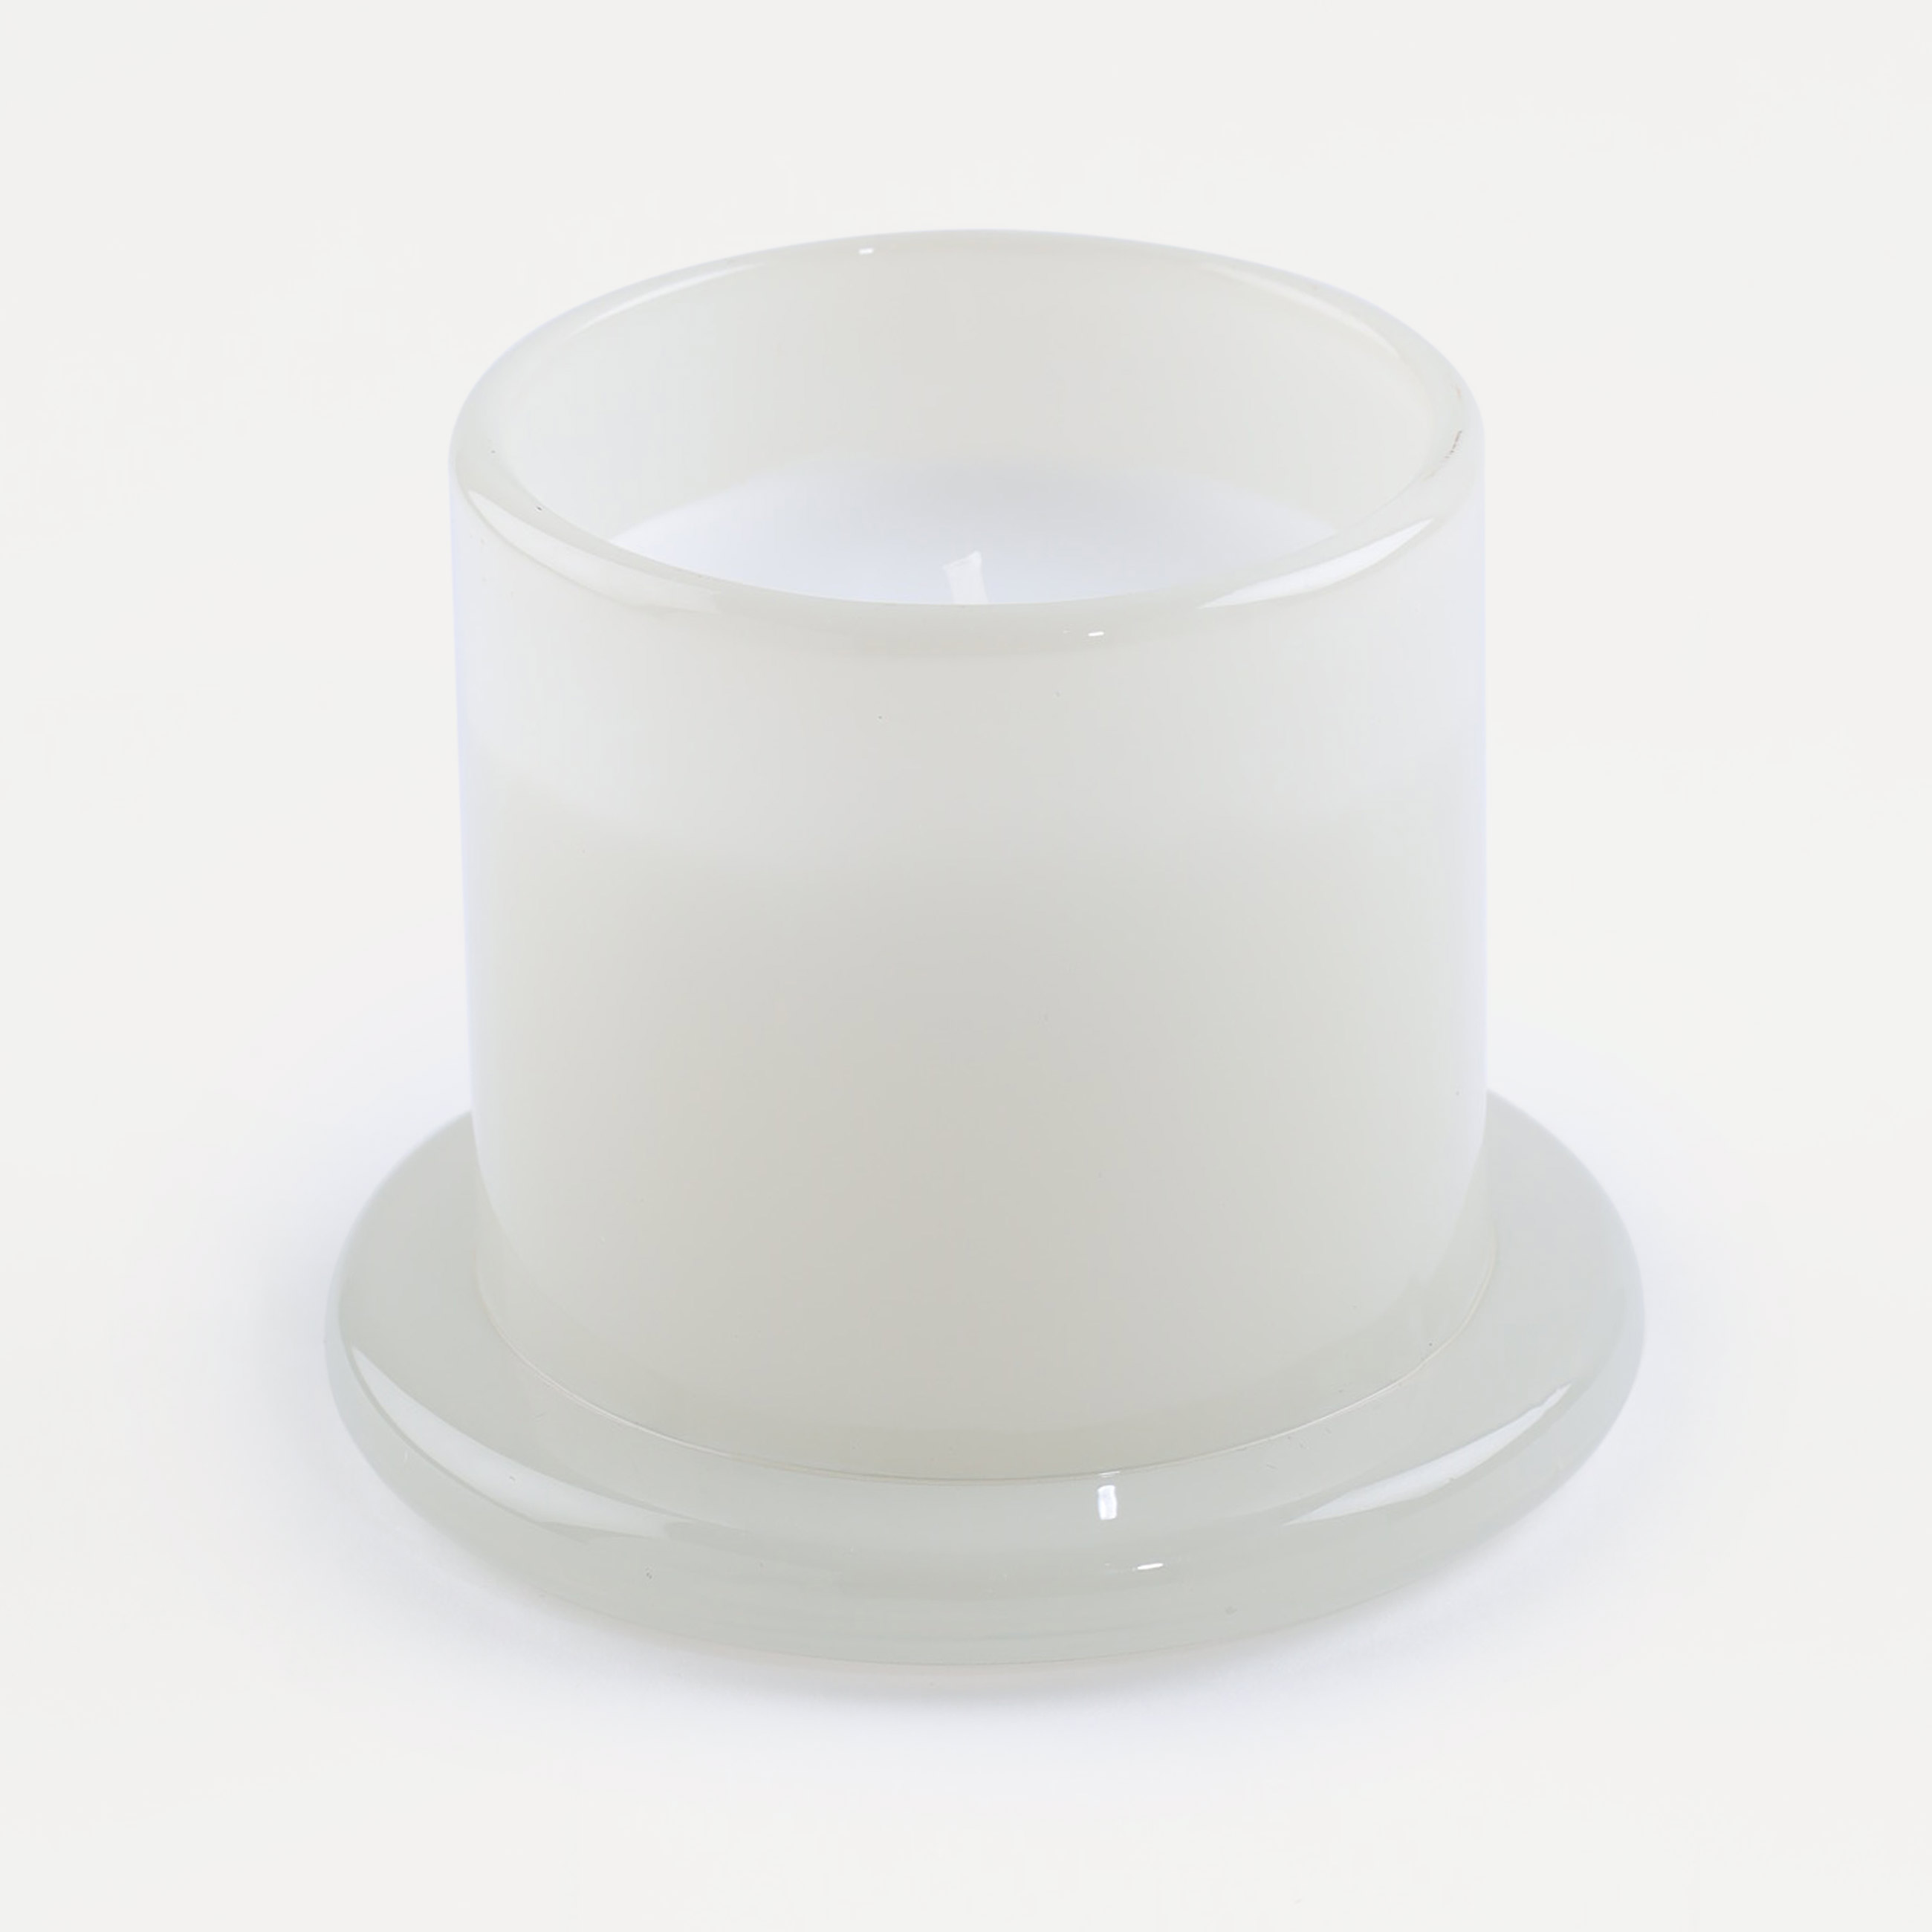 Свеча ароматическая, 12 см, в подсвечнике, под колпаком, с кисточкой, стекло, Creamy Puff, Stunning изображение № 2